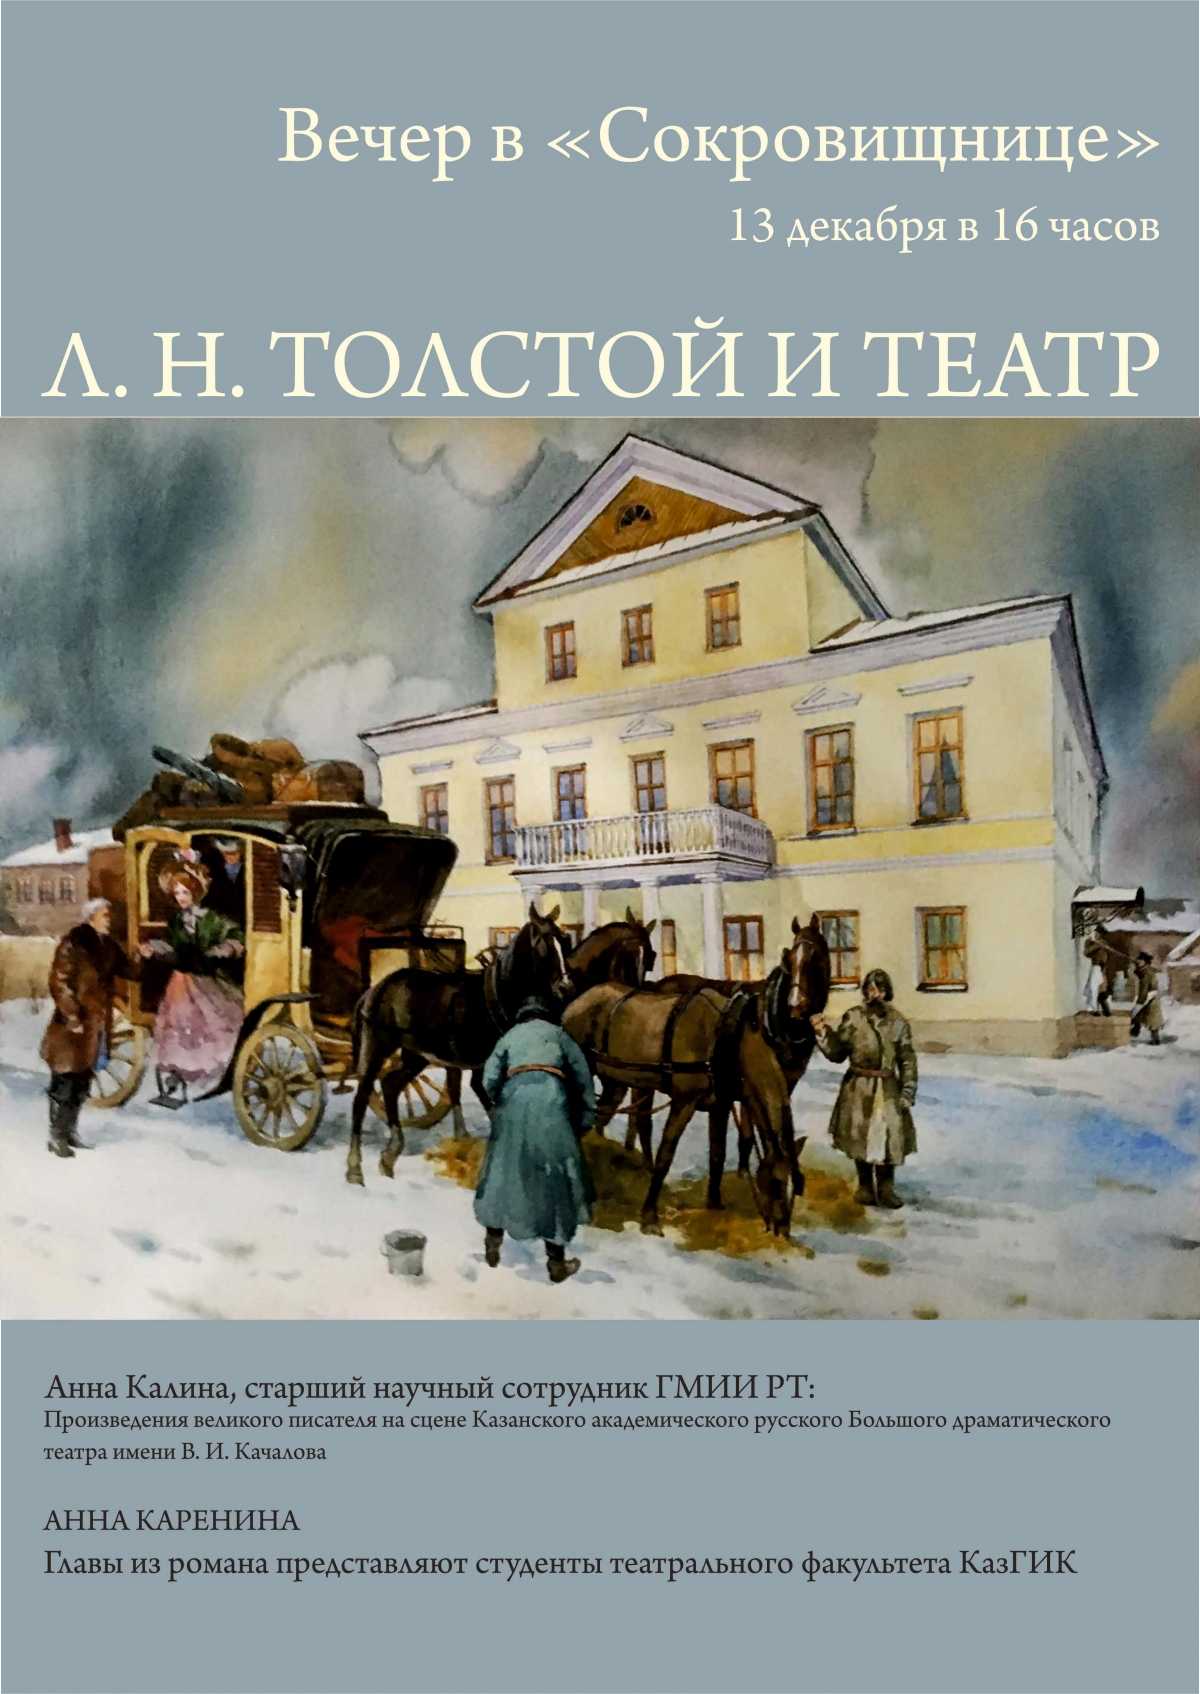 13 декабря в "Хазинэ": Лев Толстой и театр